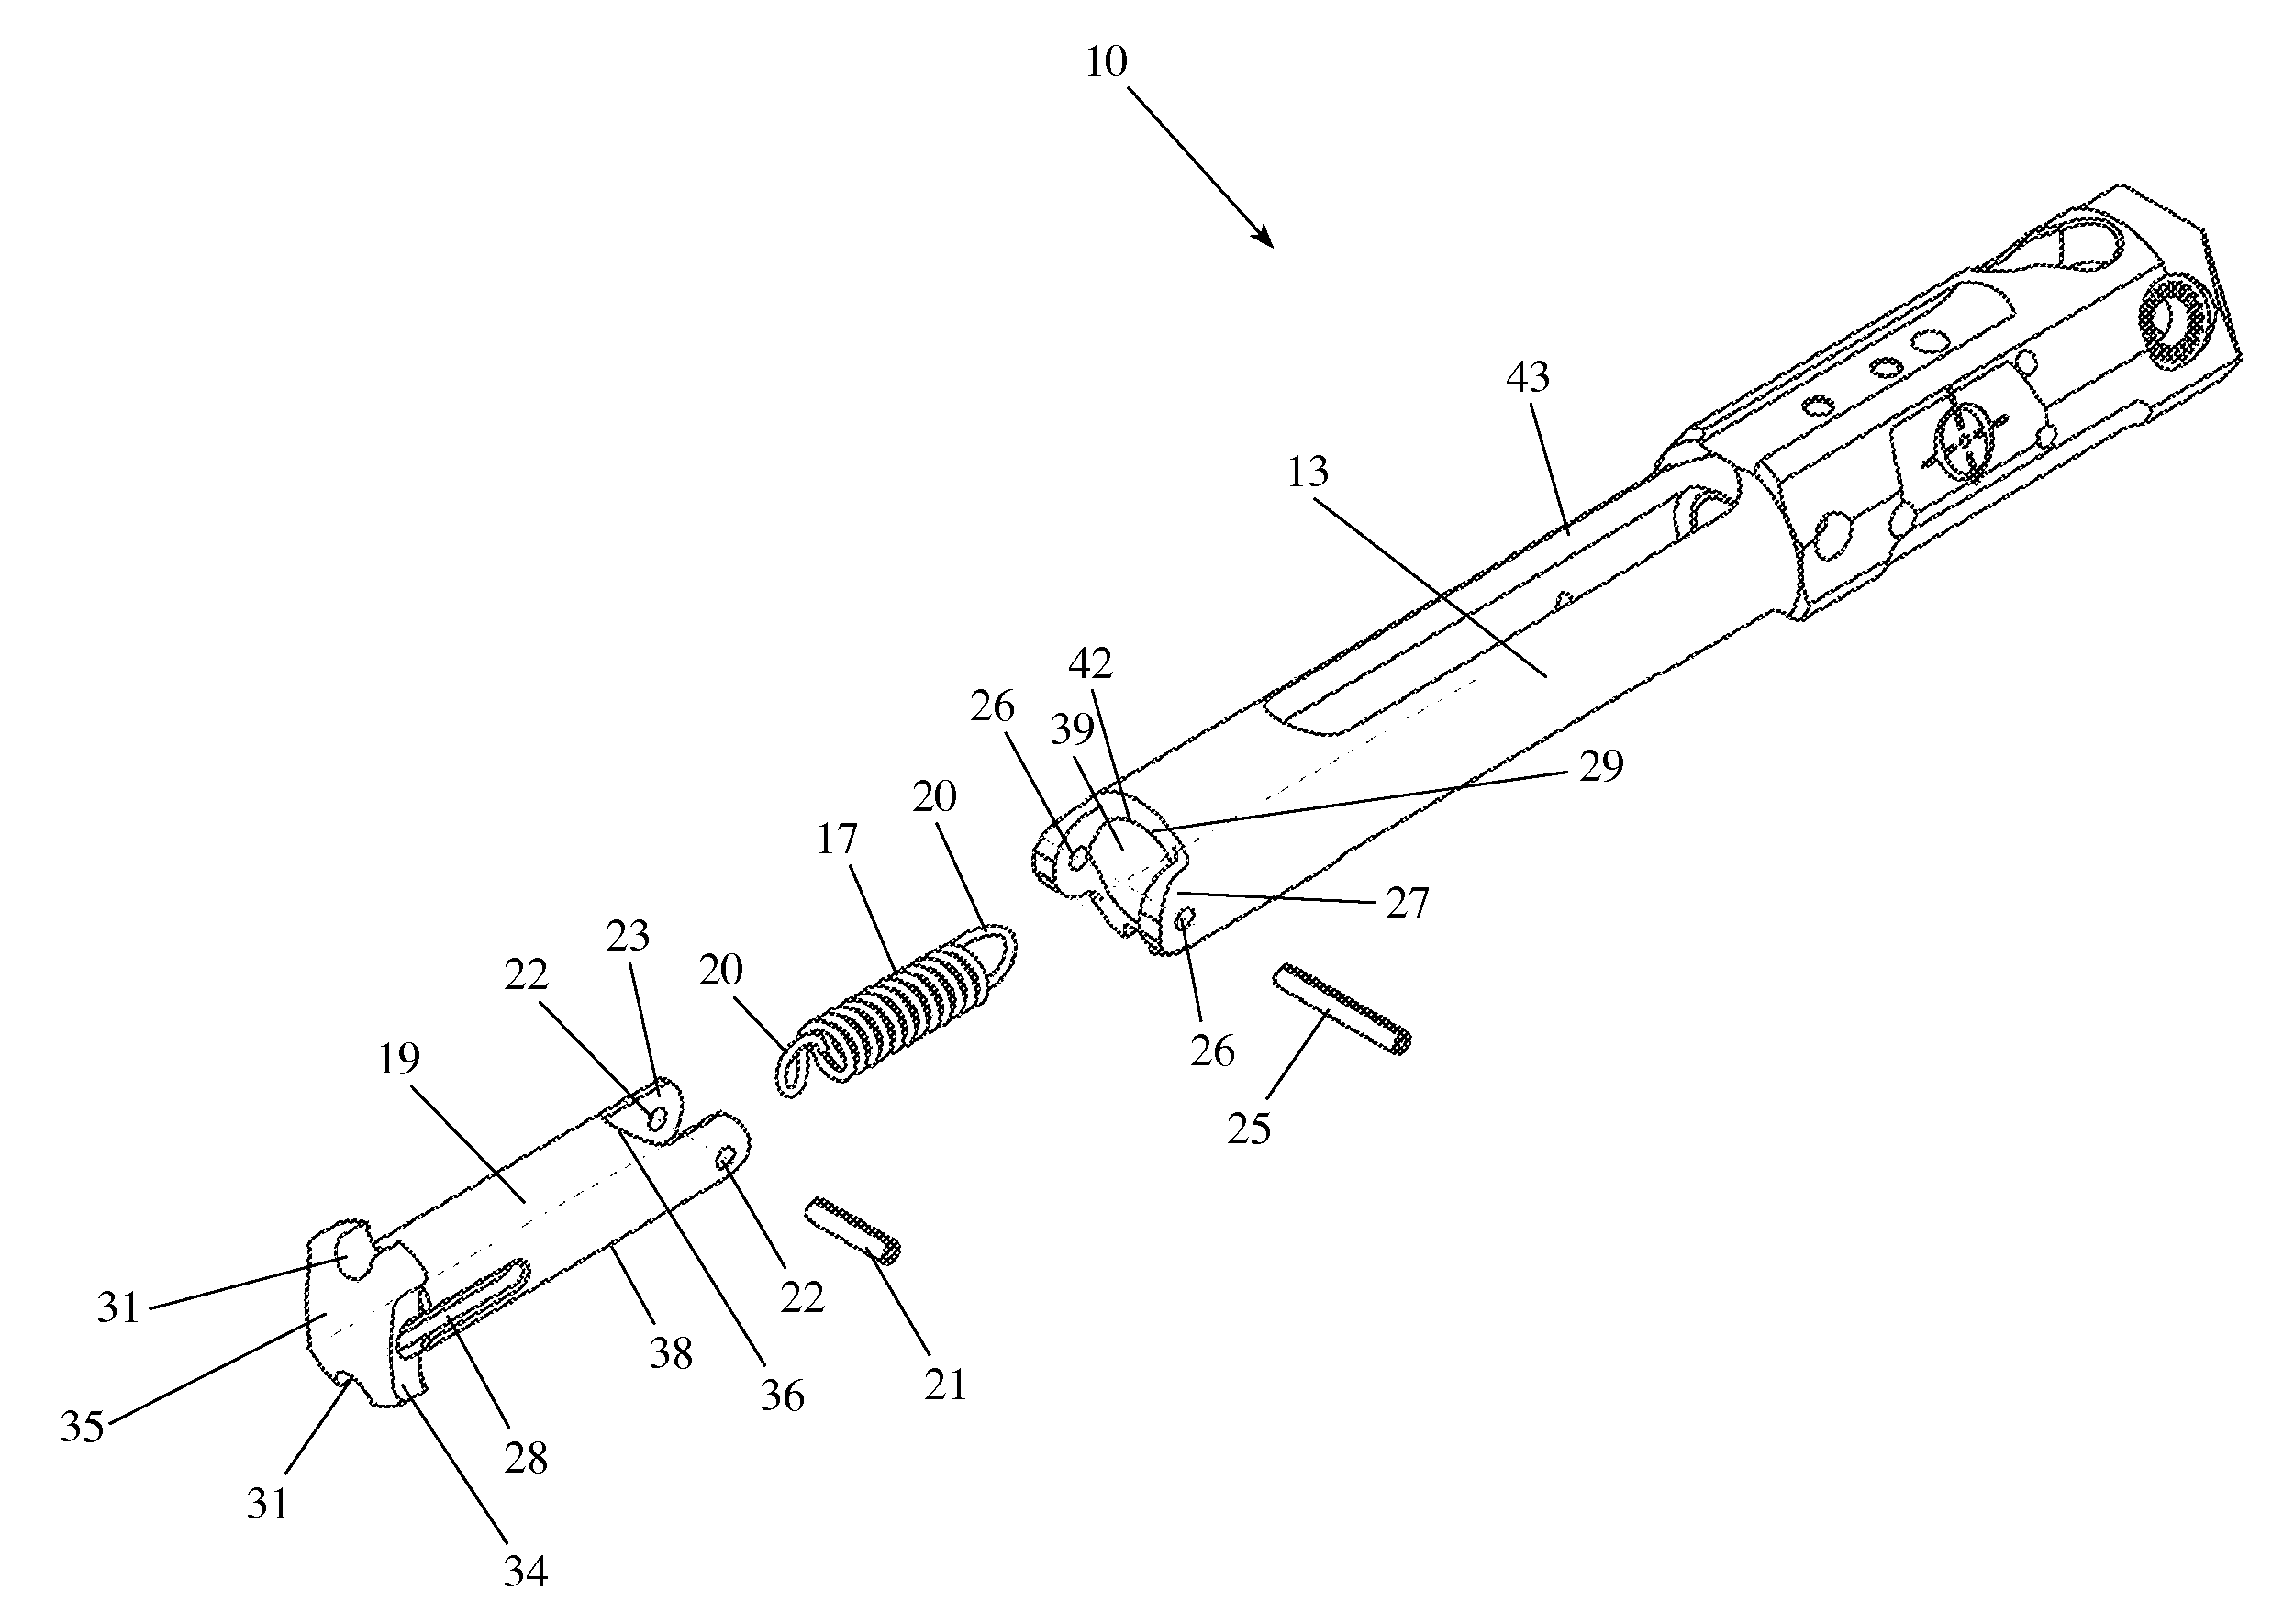 Compressible bolt carrier extension system